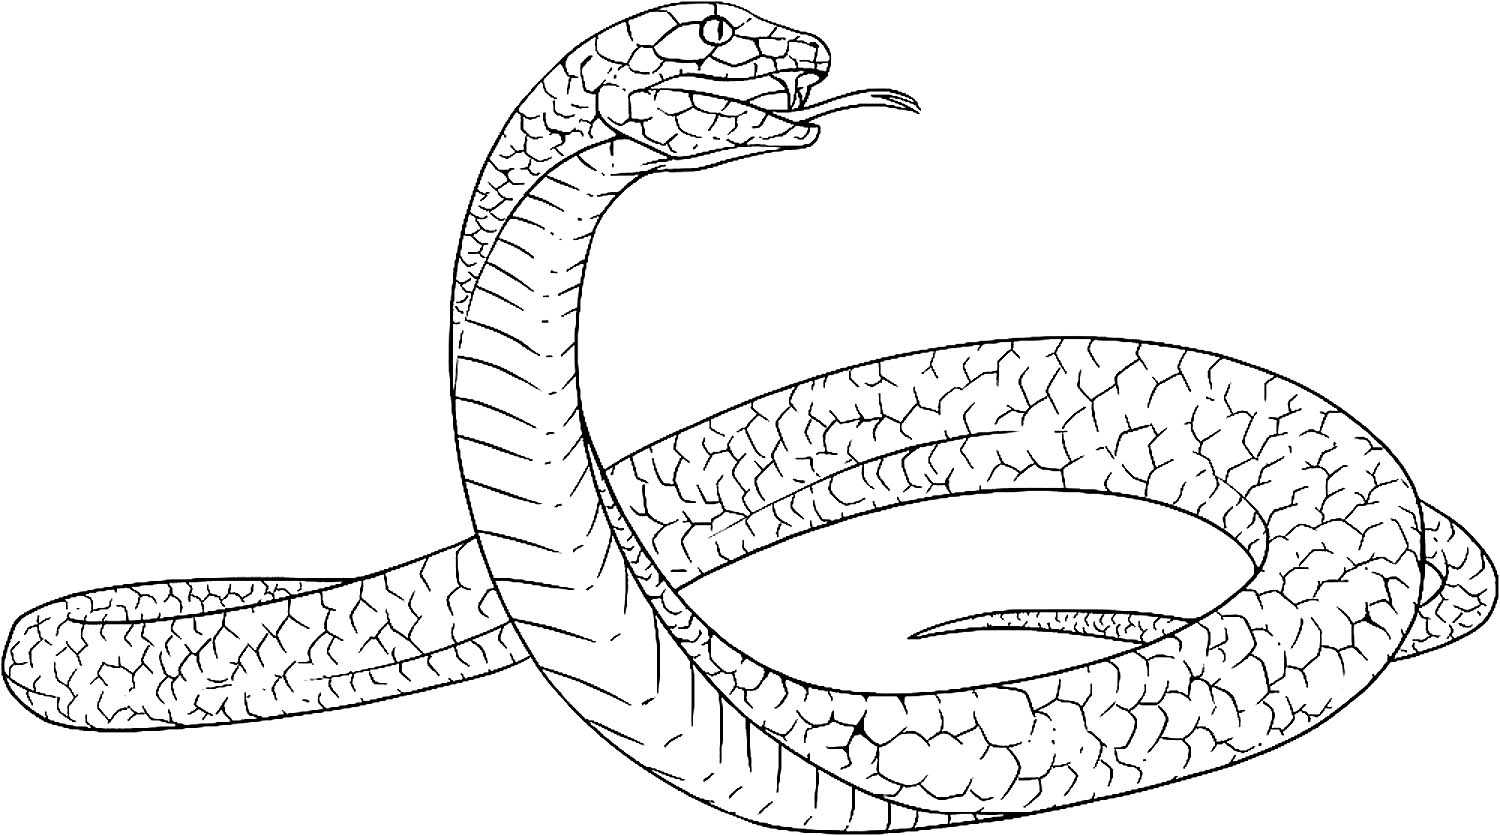 Раскраски Змеи Антистресс – подборка черно-белых изображений удивительных представителей мира фауны Скачайте или распечатайте раскраски Змеи Антистресс для взрослых, которые мы предлагаем вам совершенно бесплатно